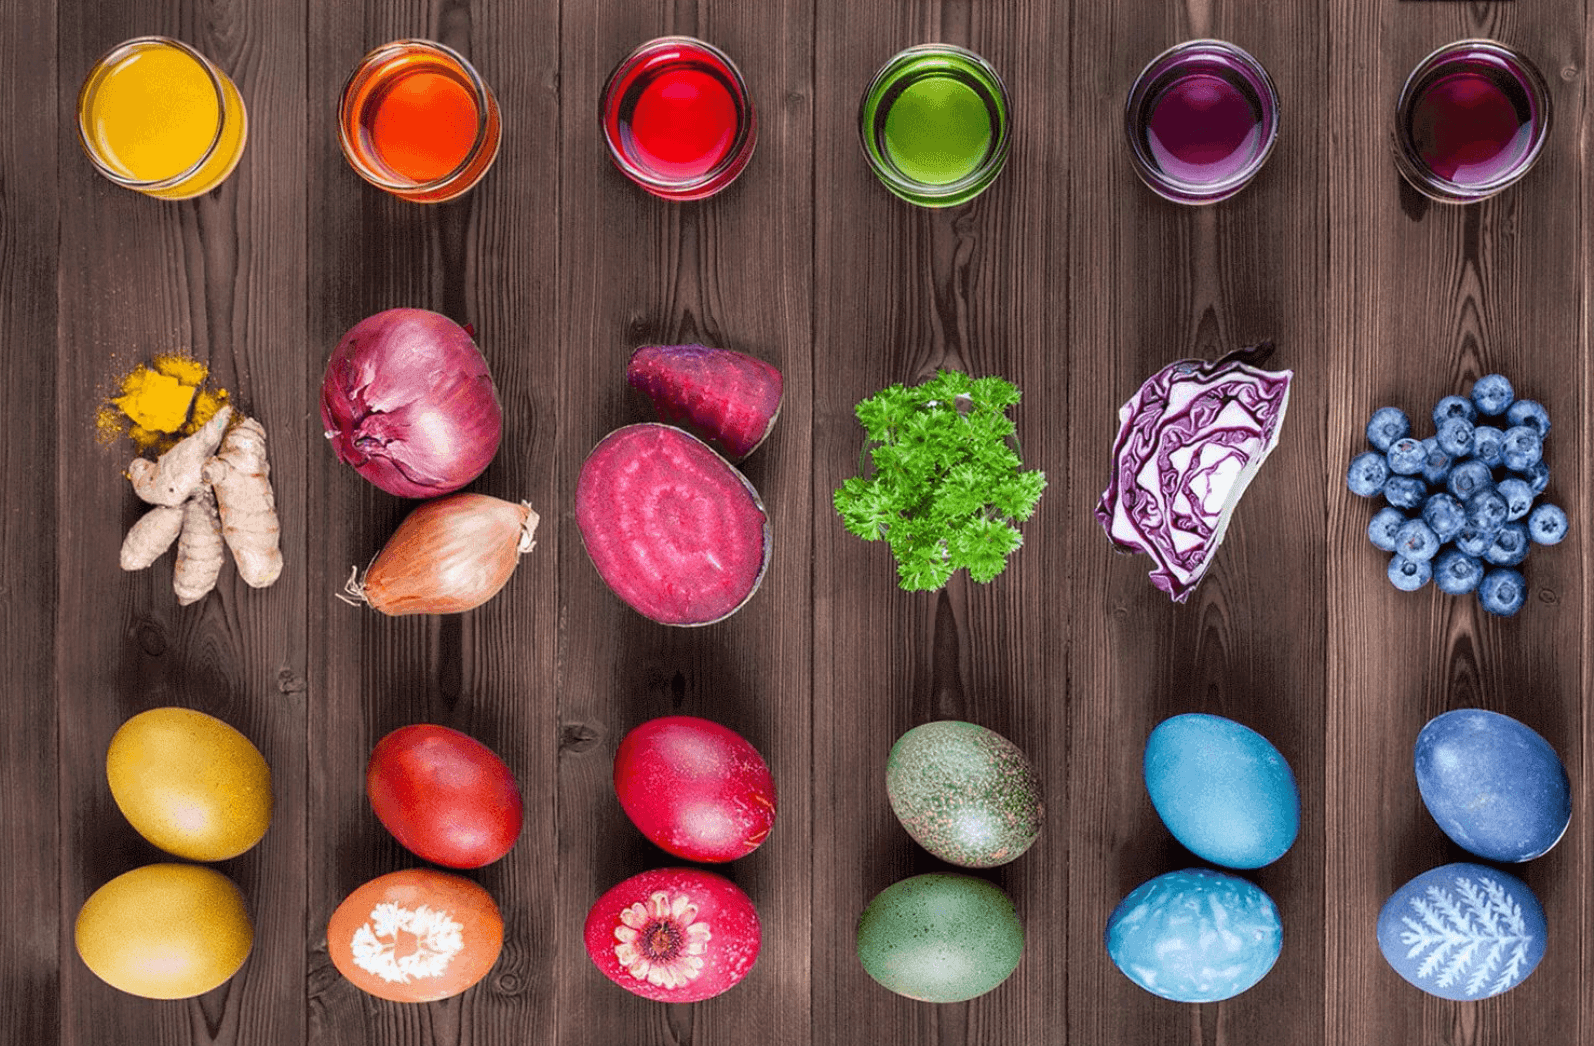 Пищевой краситель для яиц можно. Красители пищевые натуральные. Пищевые натуральные красители для яиц. Натуральные краски для яиц. Природные красители для яиц.